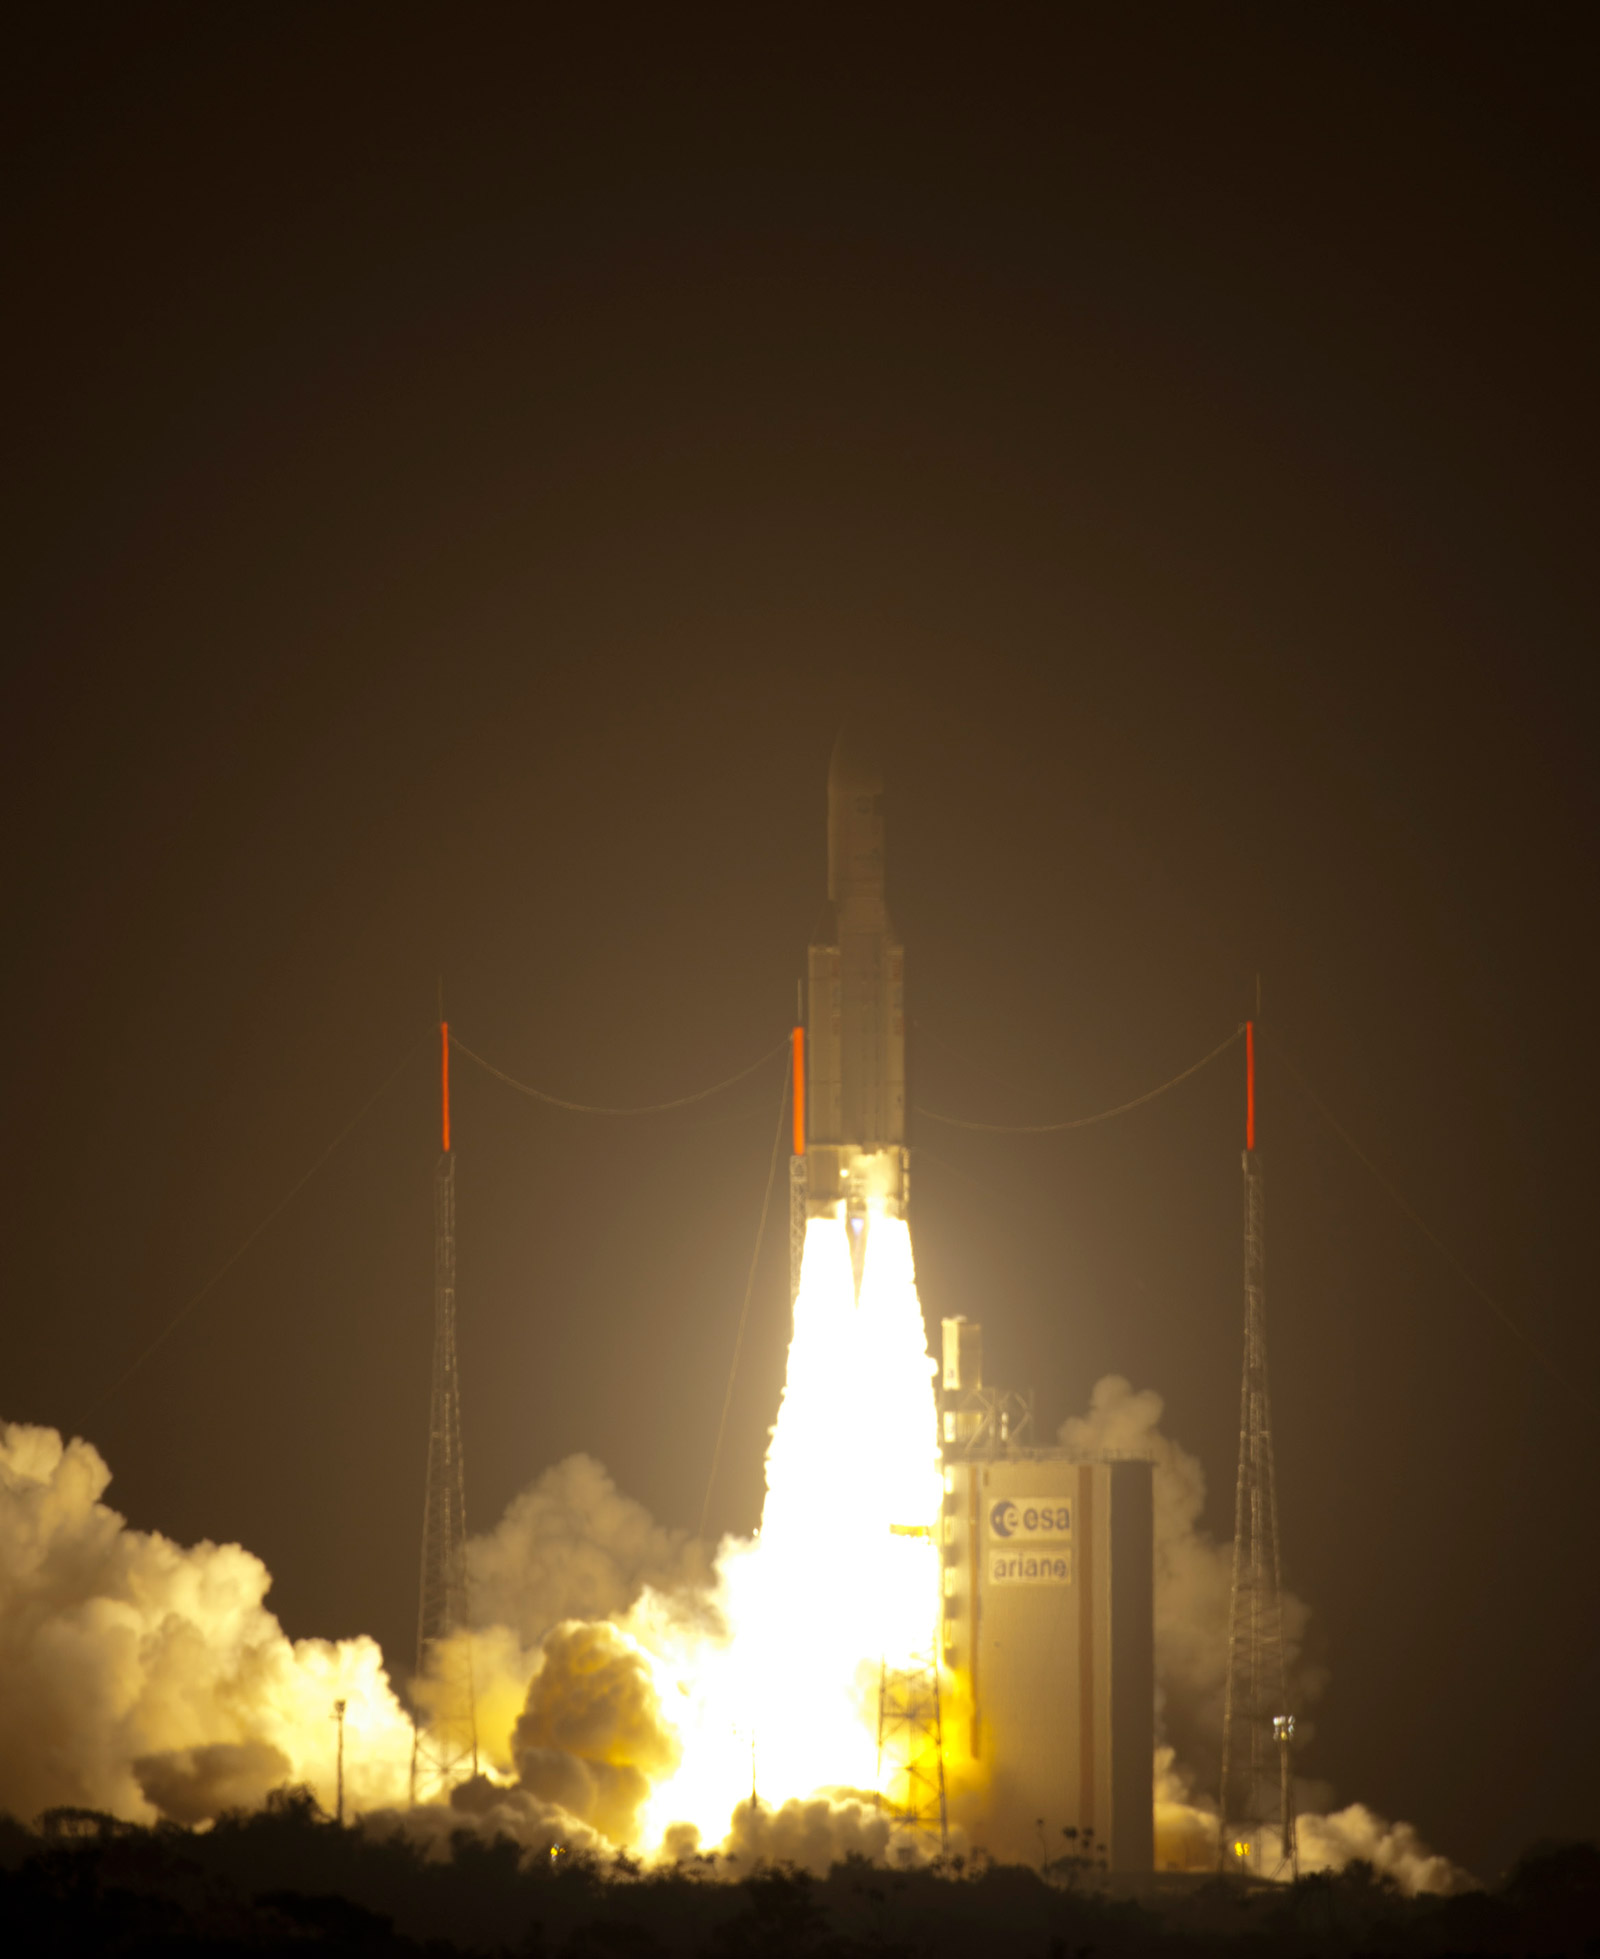 Après un report de 24 heures, Ariane 5 et l’ATV Johannes Kepler ont décollé dans la nuit de mardi à mercredi à 22 h 50 min 55 s précises, malgré des conditions météorologiques peu clémentes pour les spectateurs. 1 h 03 min 53 s plus tard, l’ATV-2 a été injecté sur orbite à 270,2 kilomètres. On notera que le lanceur a survolé l’Europe, environ 20 minutes après son décollage. © Esa/S. Corveja